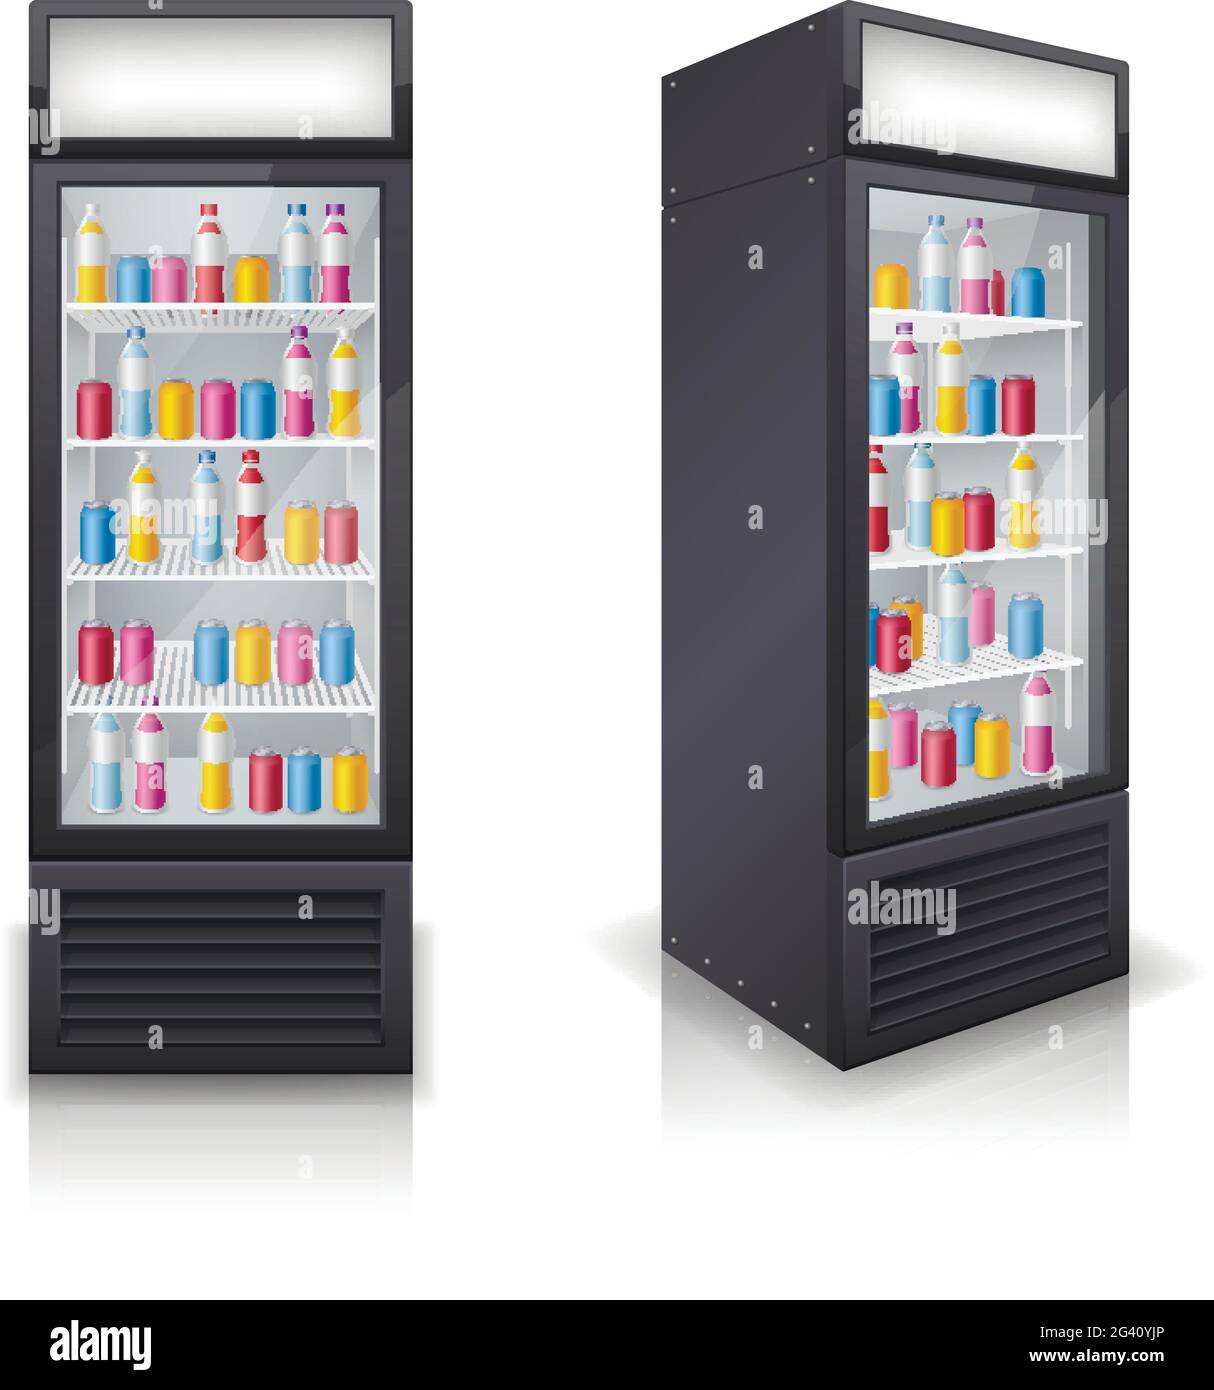 Getränke Kühlschrank geschlossen Display Tür gefüllt mit bunten  Erfrischungsflaschen vorne und eckige Ansichten realistische  Vektor-Illustration Stock-Vektorgrafik - Alamy